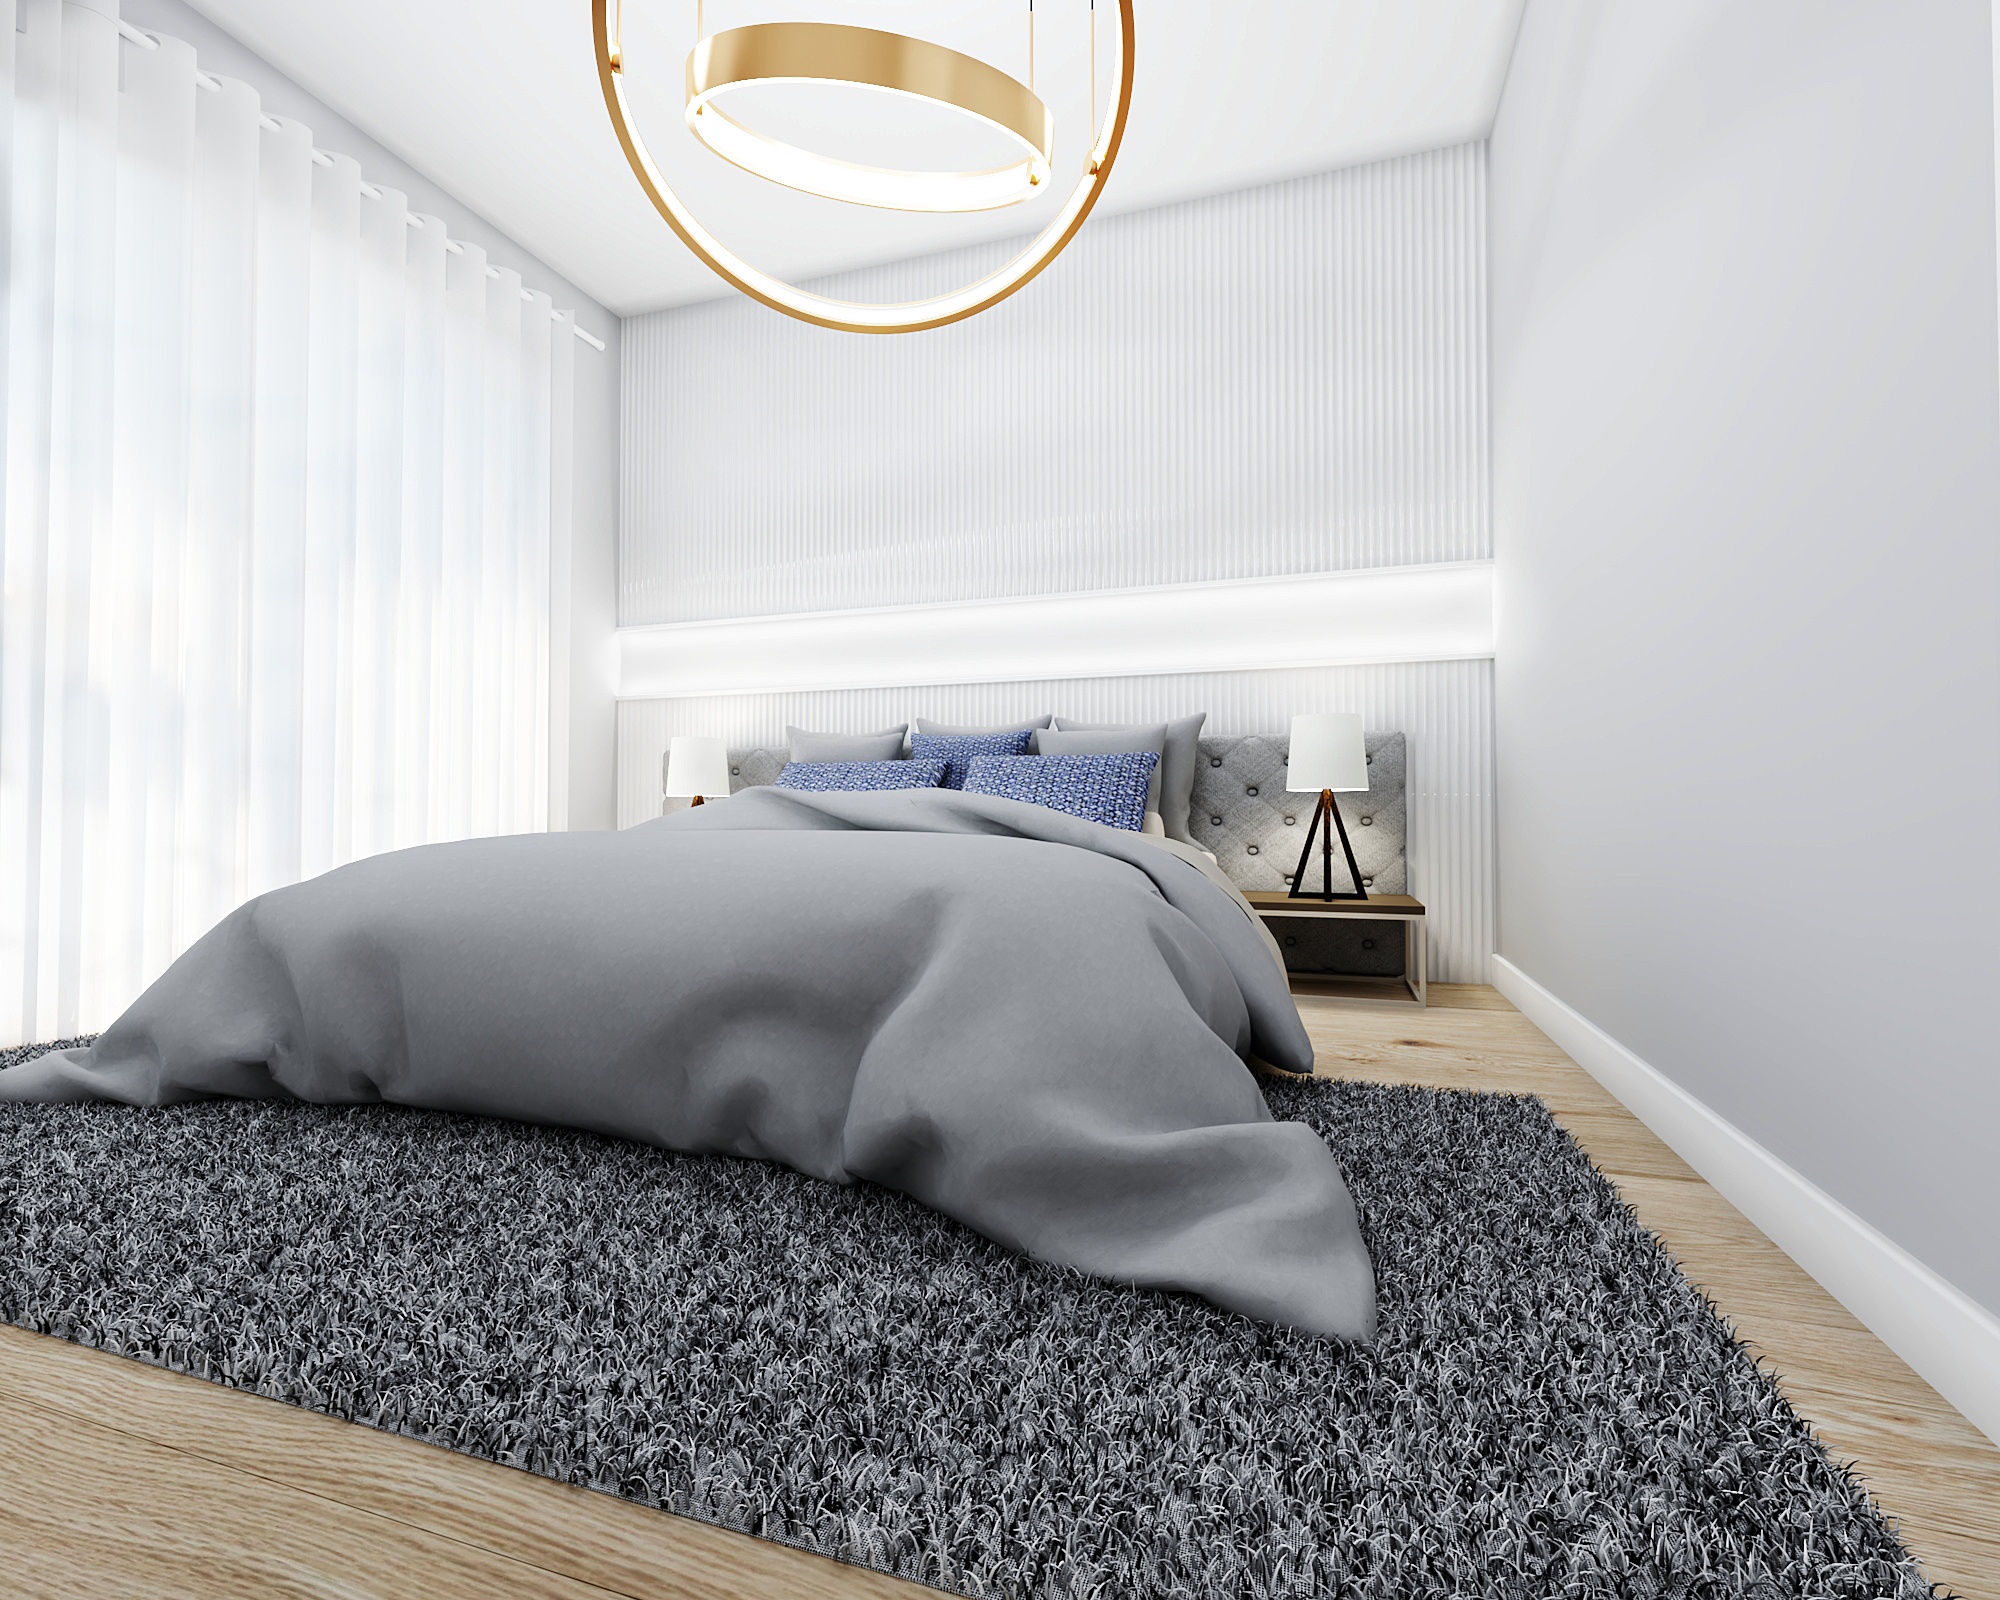 дизайн интерьера спальни